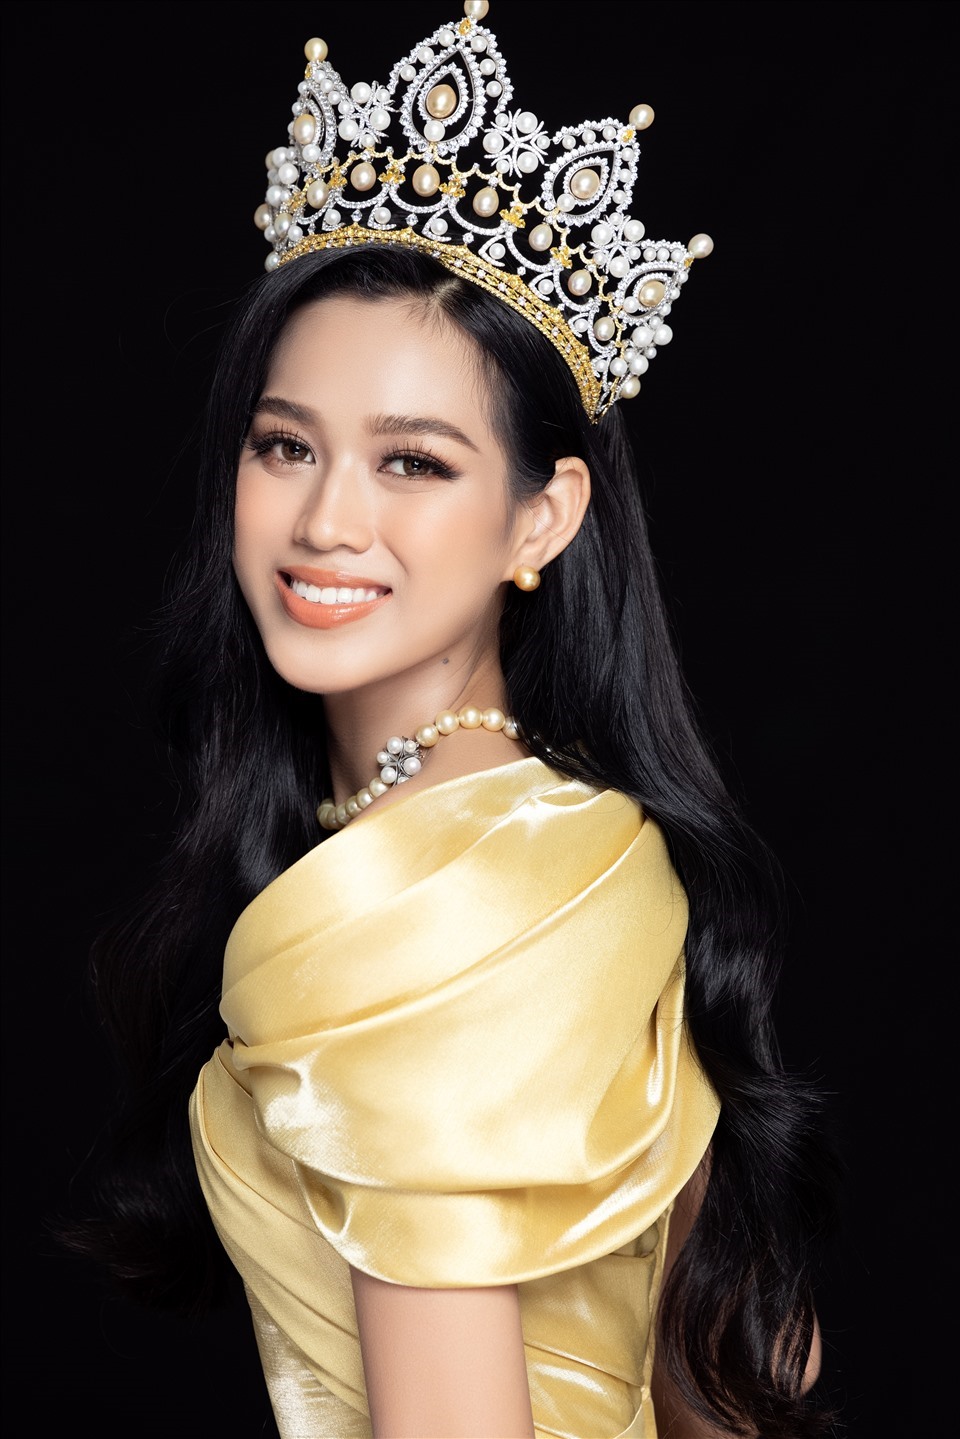 Antifan cho rằng, Hoa hậu Đỗ Thị Hà không xứng đáng đại diện cho Việt Nam tham gia cuộc thi “Miss World” sắp tới. Ảnh: NVCC